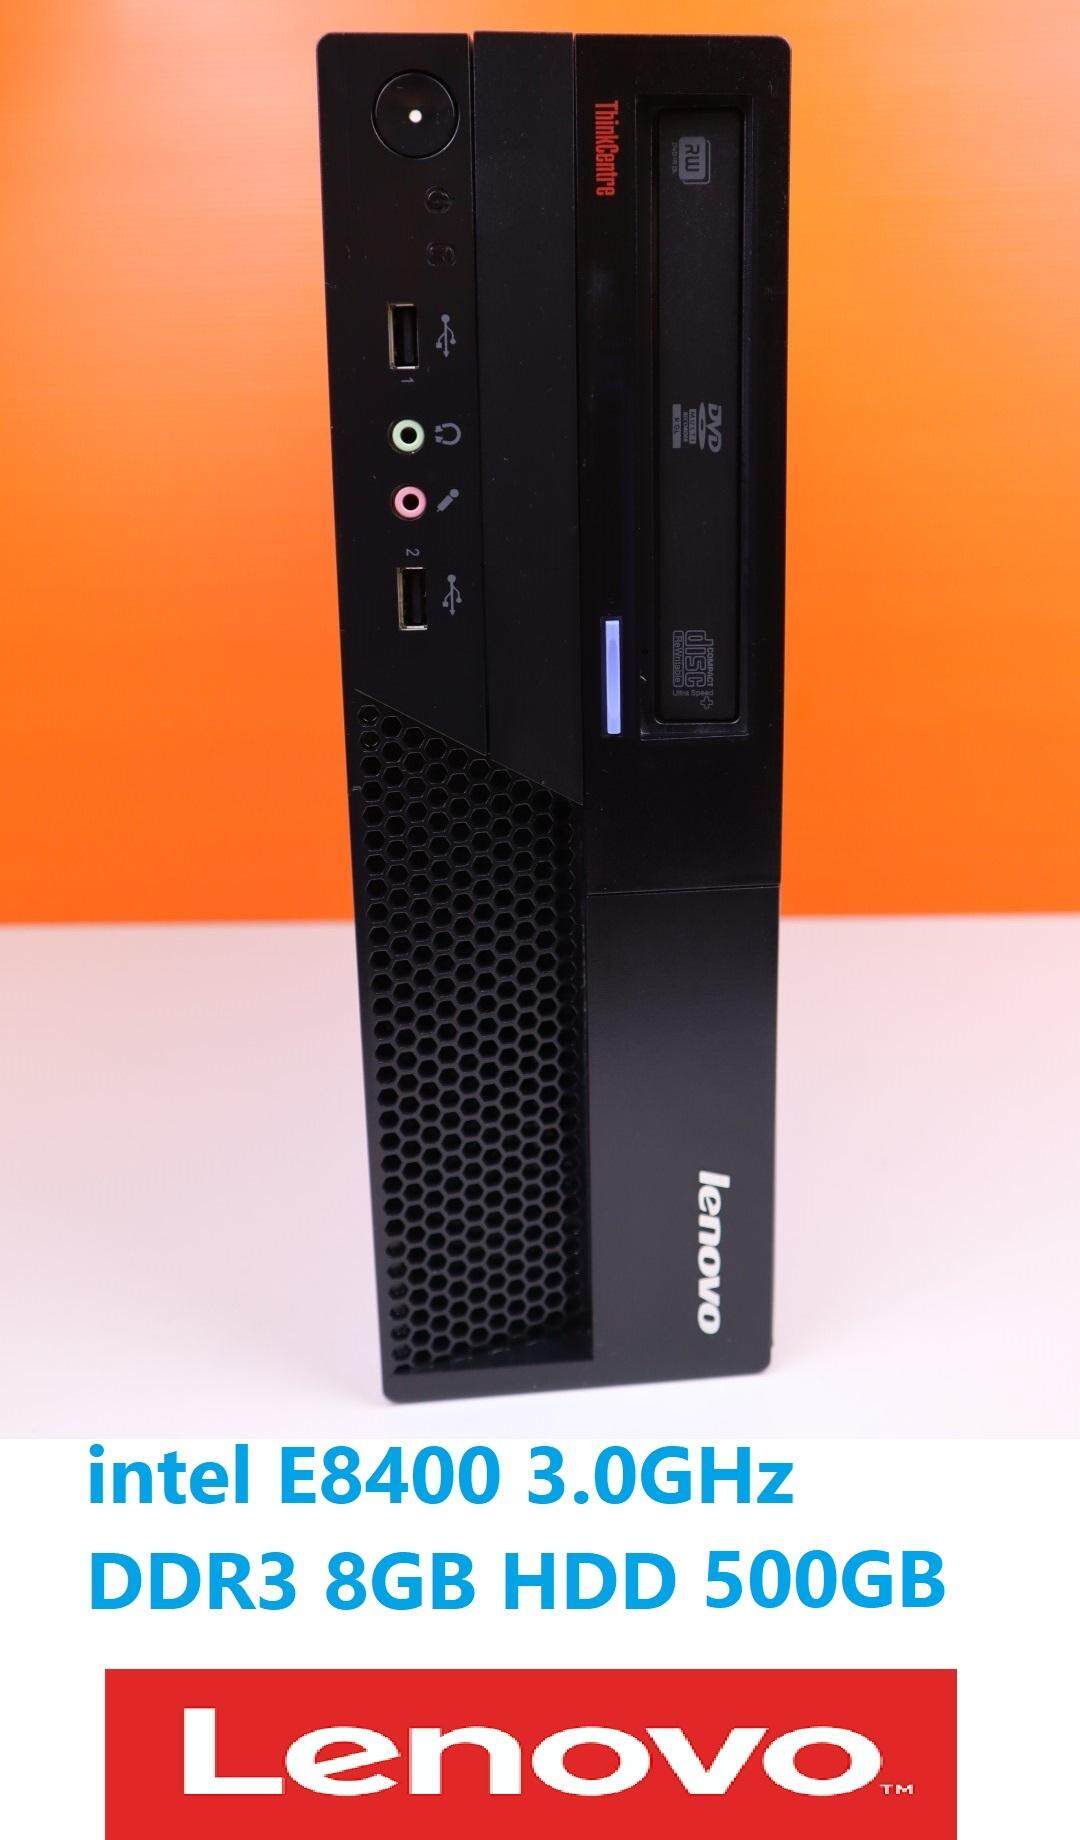 คอมพิวเตอร์ Lenovo ThinkCentre M58p 6137 / Core 2 Duo E8400 3.0GHz /ddr3 8GB /HDD 500GB sata/DVD-RW